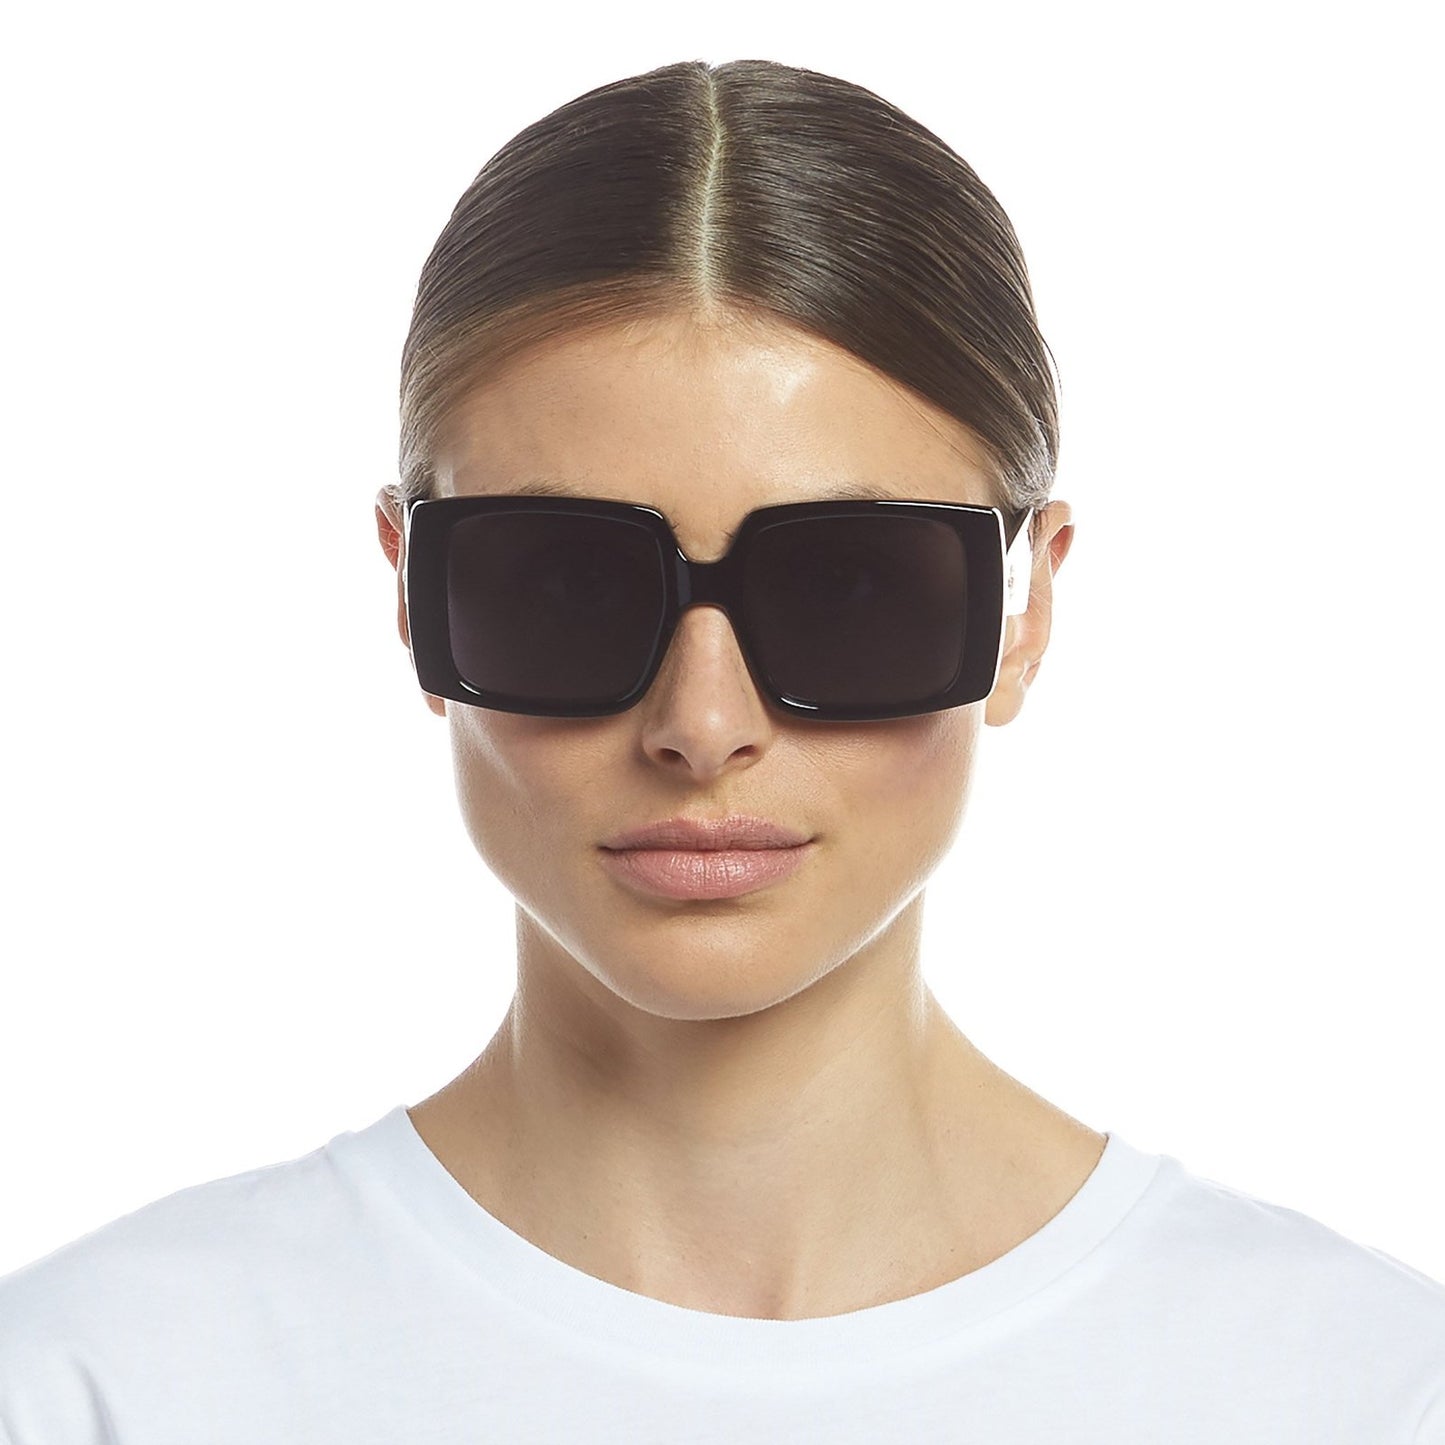 Glo Getter Sunglasses